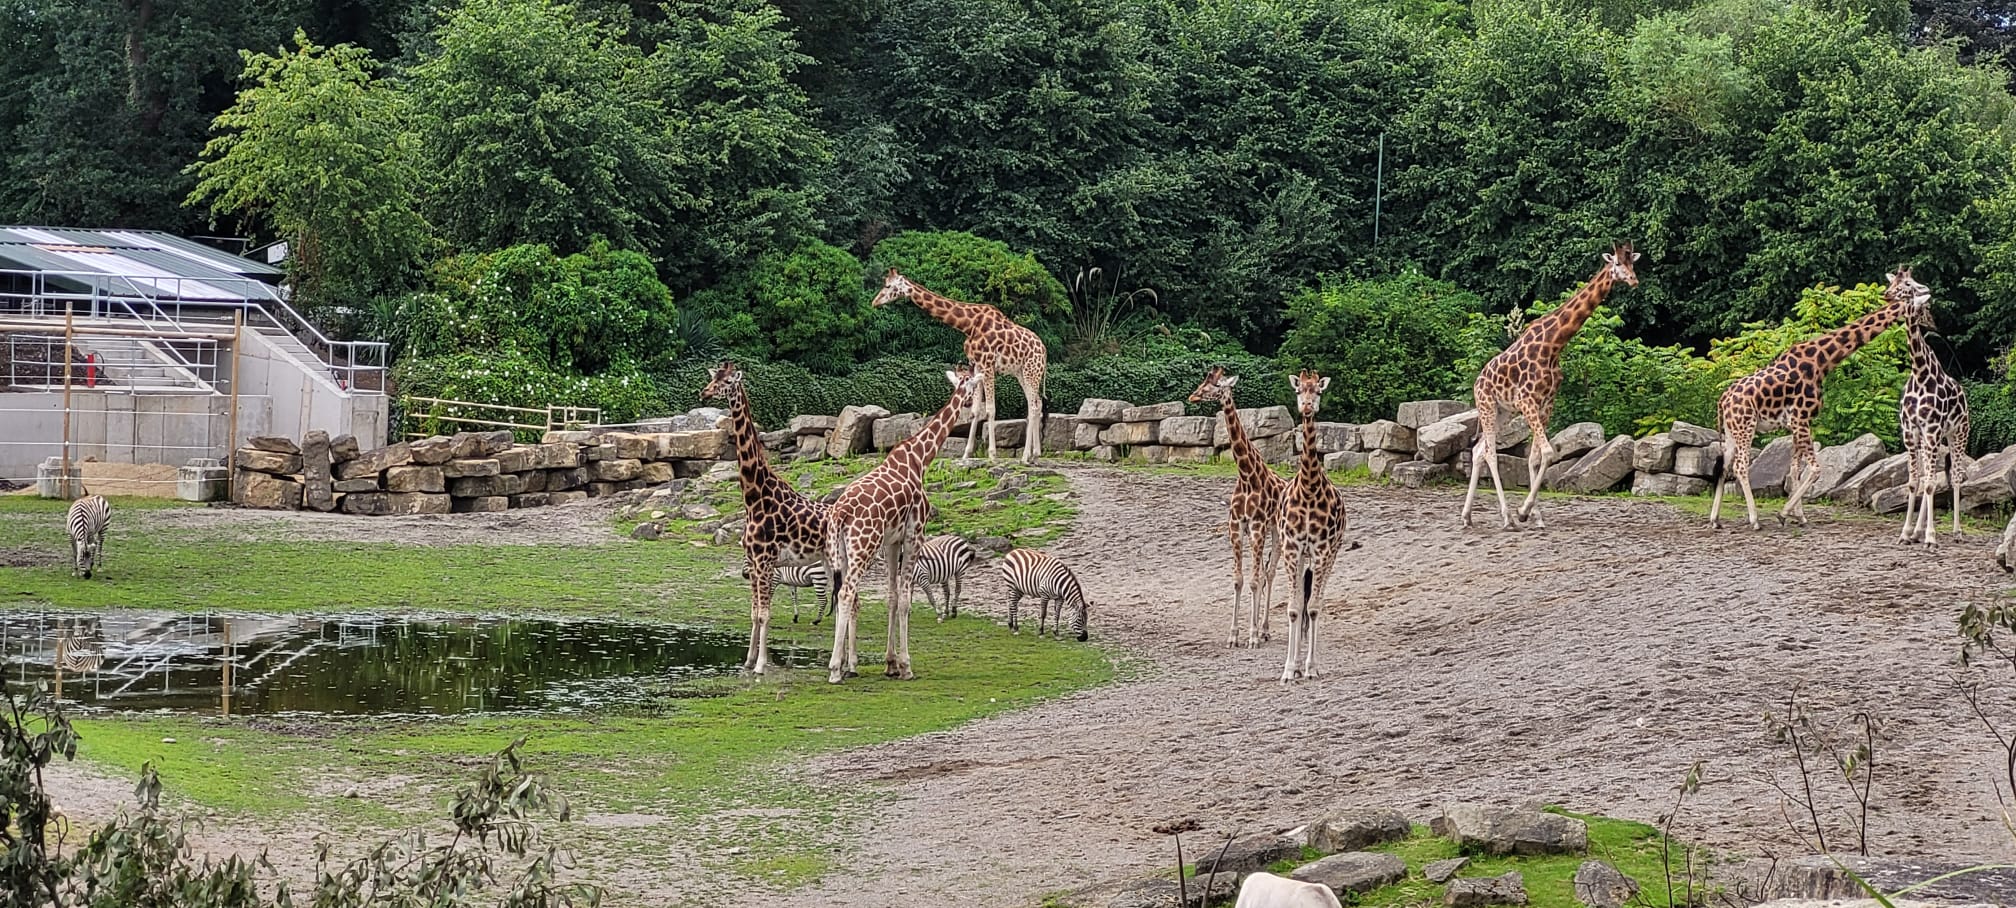 Giraffes at Dublin Zoo